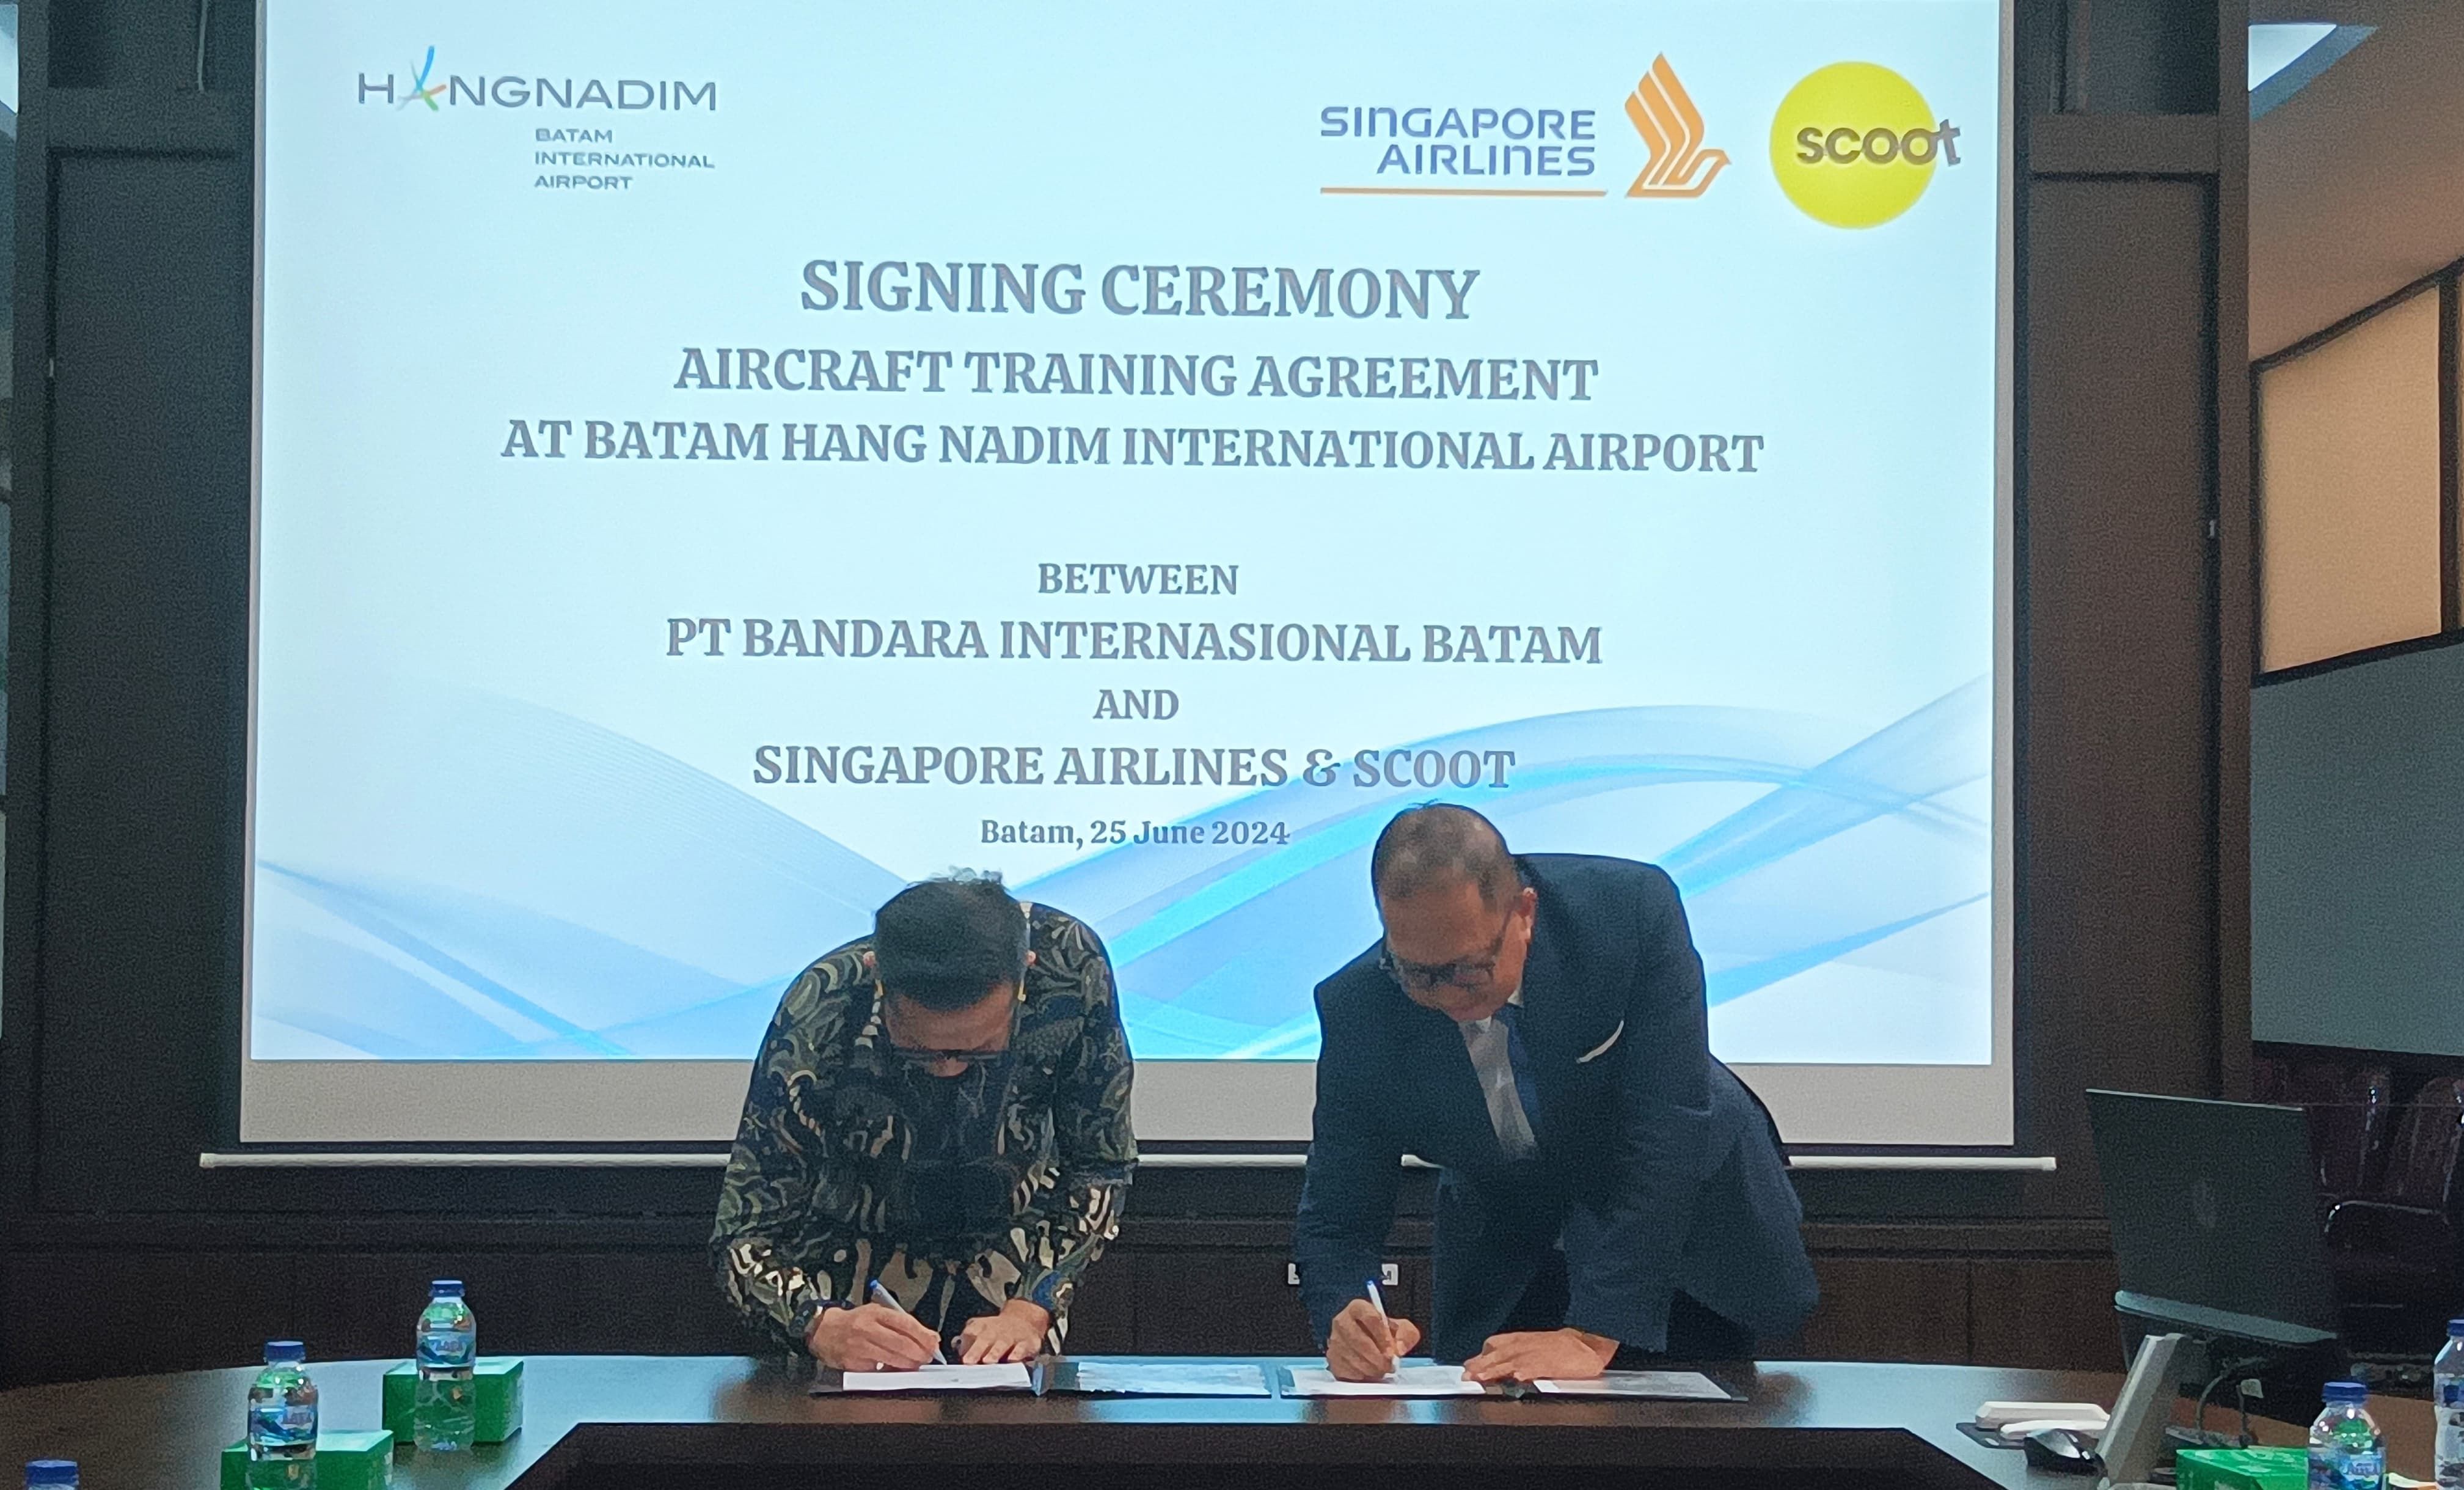 Untuk meningkatkan kapasitas dan kemampuan sumber daya-nya, manajemen Singapore Airlines & Scoot secara rutin melakukan Pelatihan Pesawat (Aircraft Training) dan kedepannya akan menggunakan Bandara Internasional Hang Nadim sebagai salah satu bandara dalam pelatihan tersebut